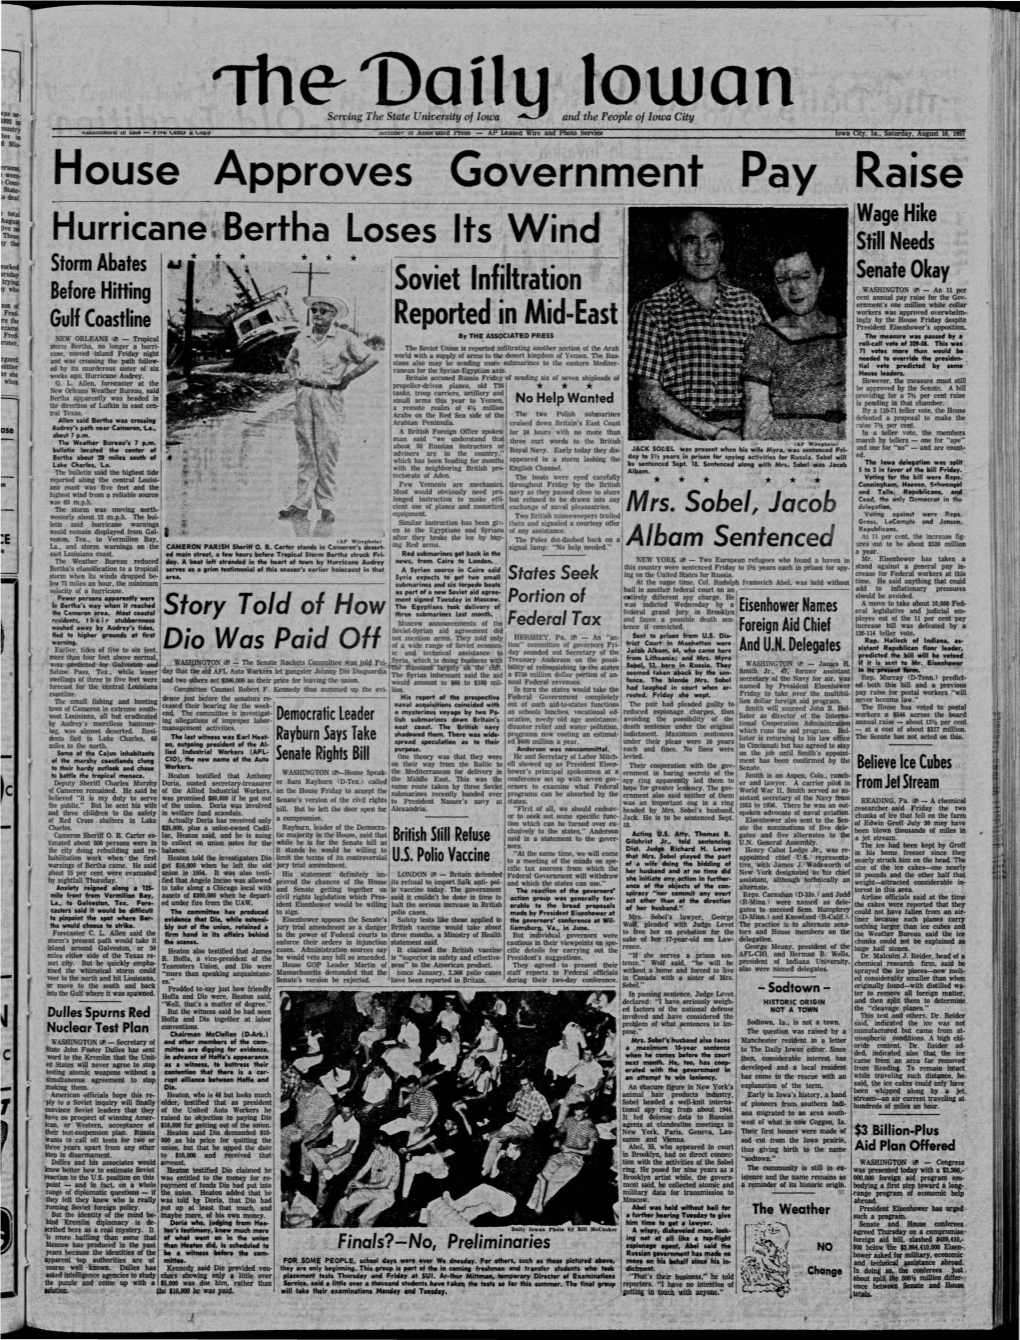 Daily Iowan (Iowa City, Iowa), 1957-08-10